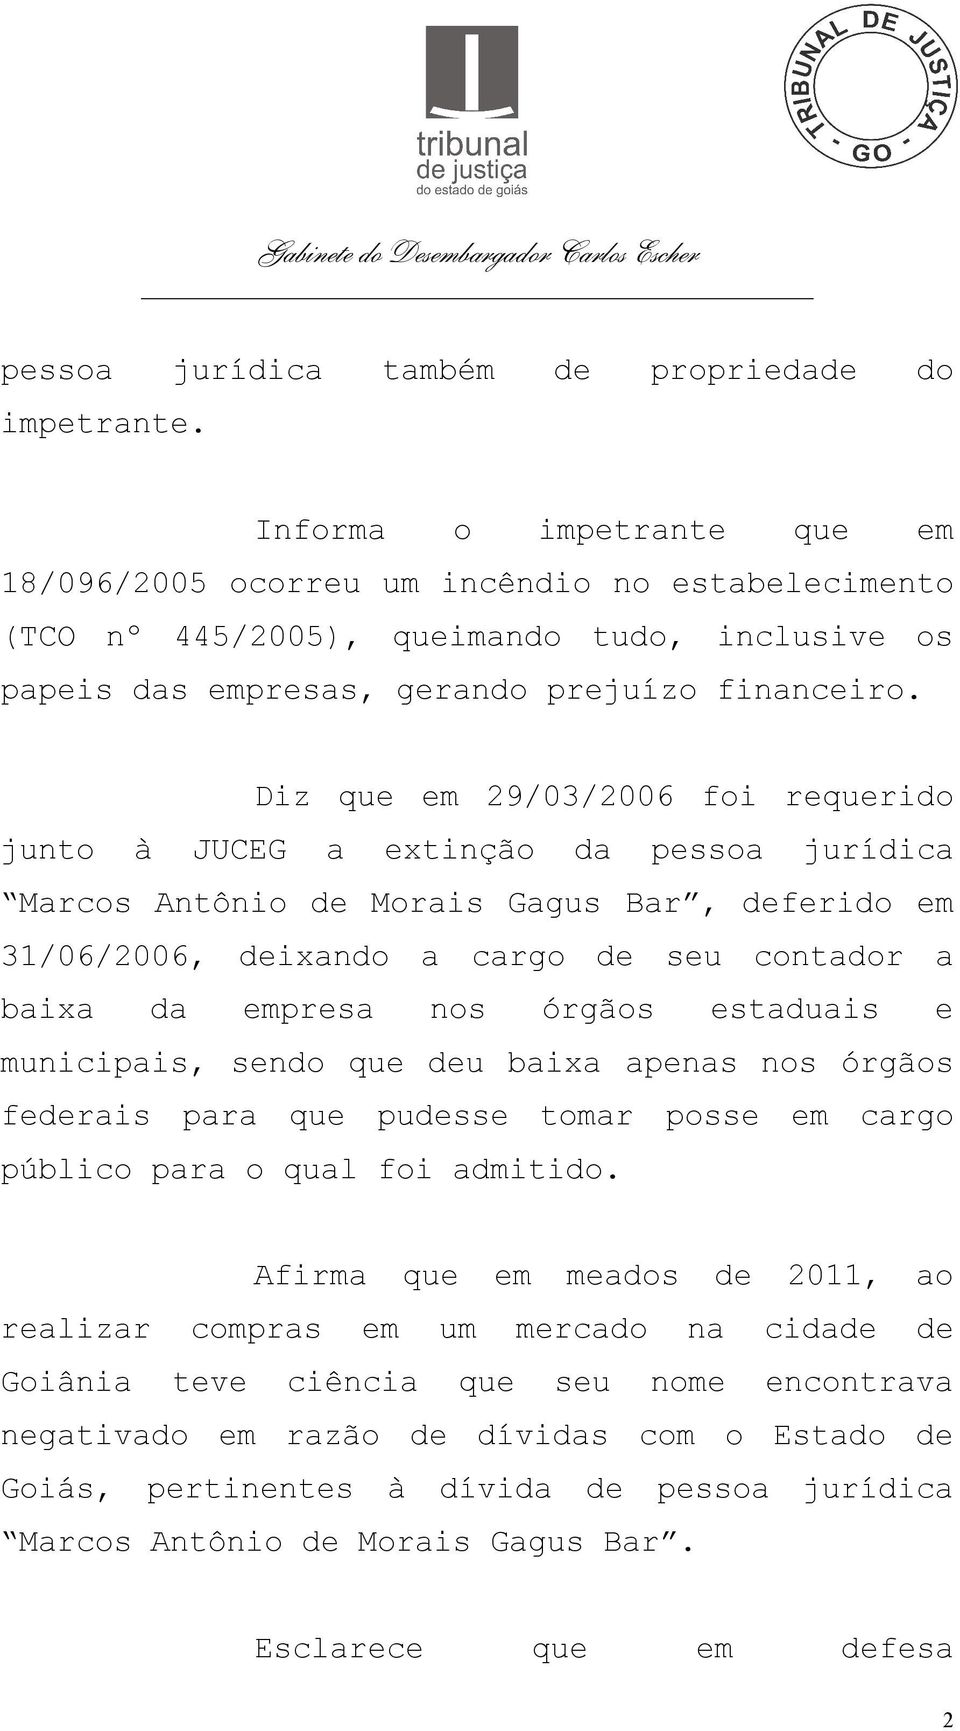 Diz que em 29/03/2006 foi requerido junto à JUCEG a extinção da pessoa jurídica Marcos Antônio de Morais Gagus Bar, deferido em 31/06/2006, deixando a cargo de seu contador a baixa da empresa nos